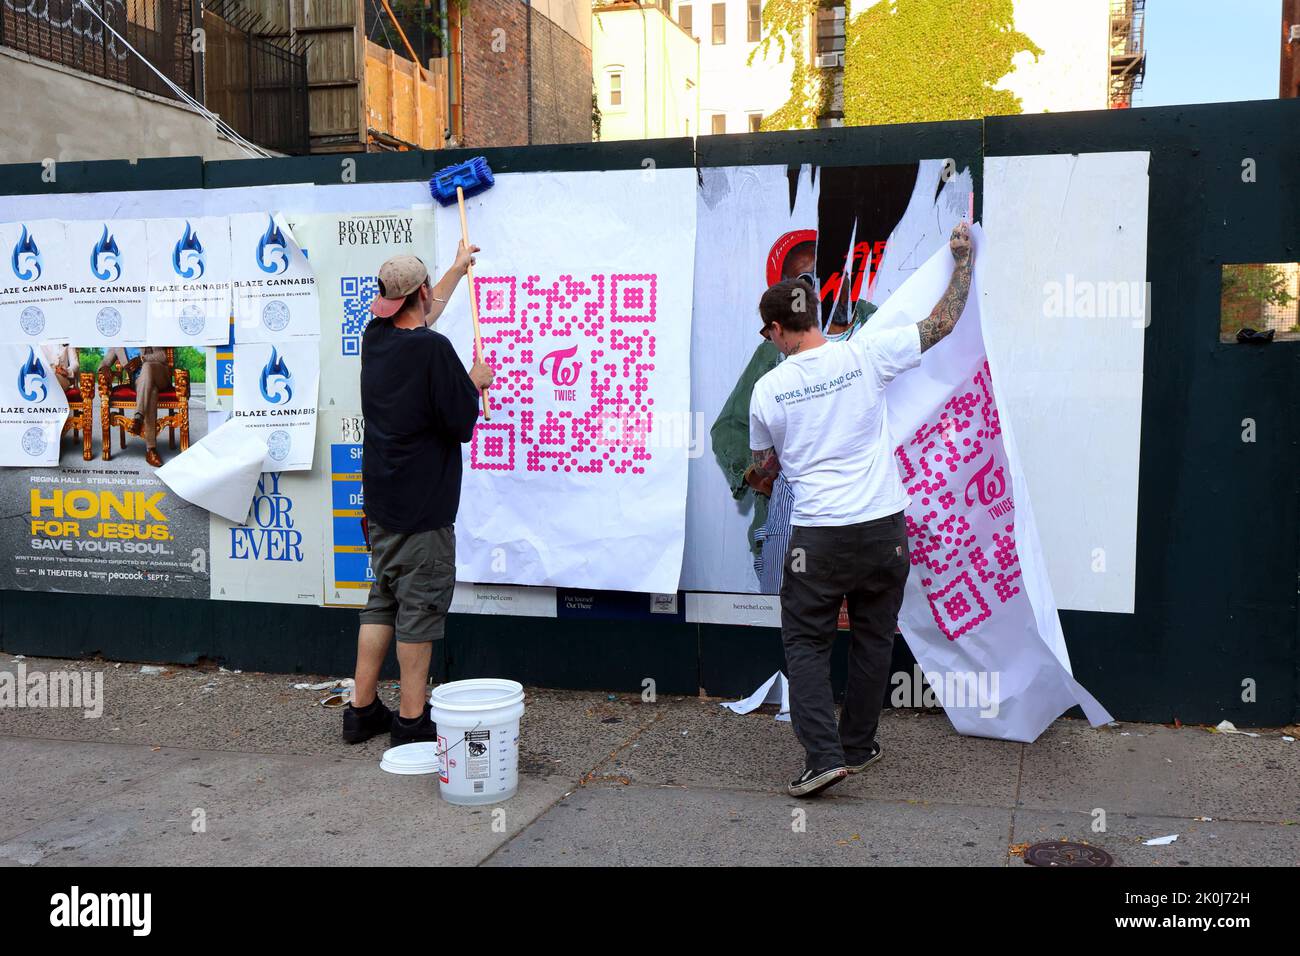 La gente wheatpeging carteles publicitarios en una pared, o anuncios de publicación salvaje, como parte de una calle a nivel, guerrilla, campaña de marketing urbano. Foto de stock